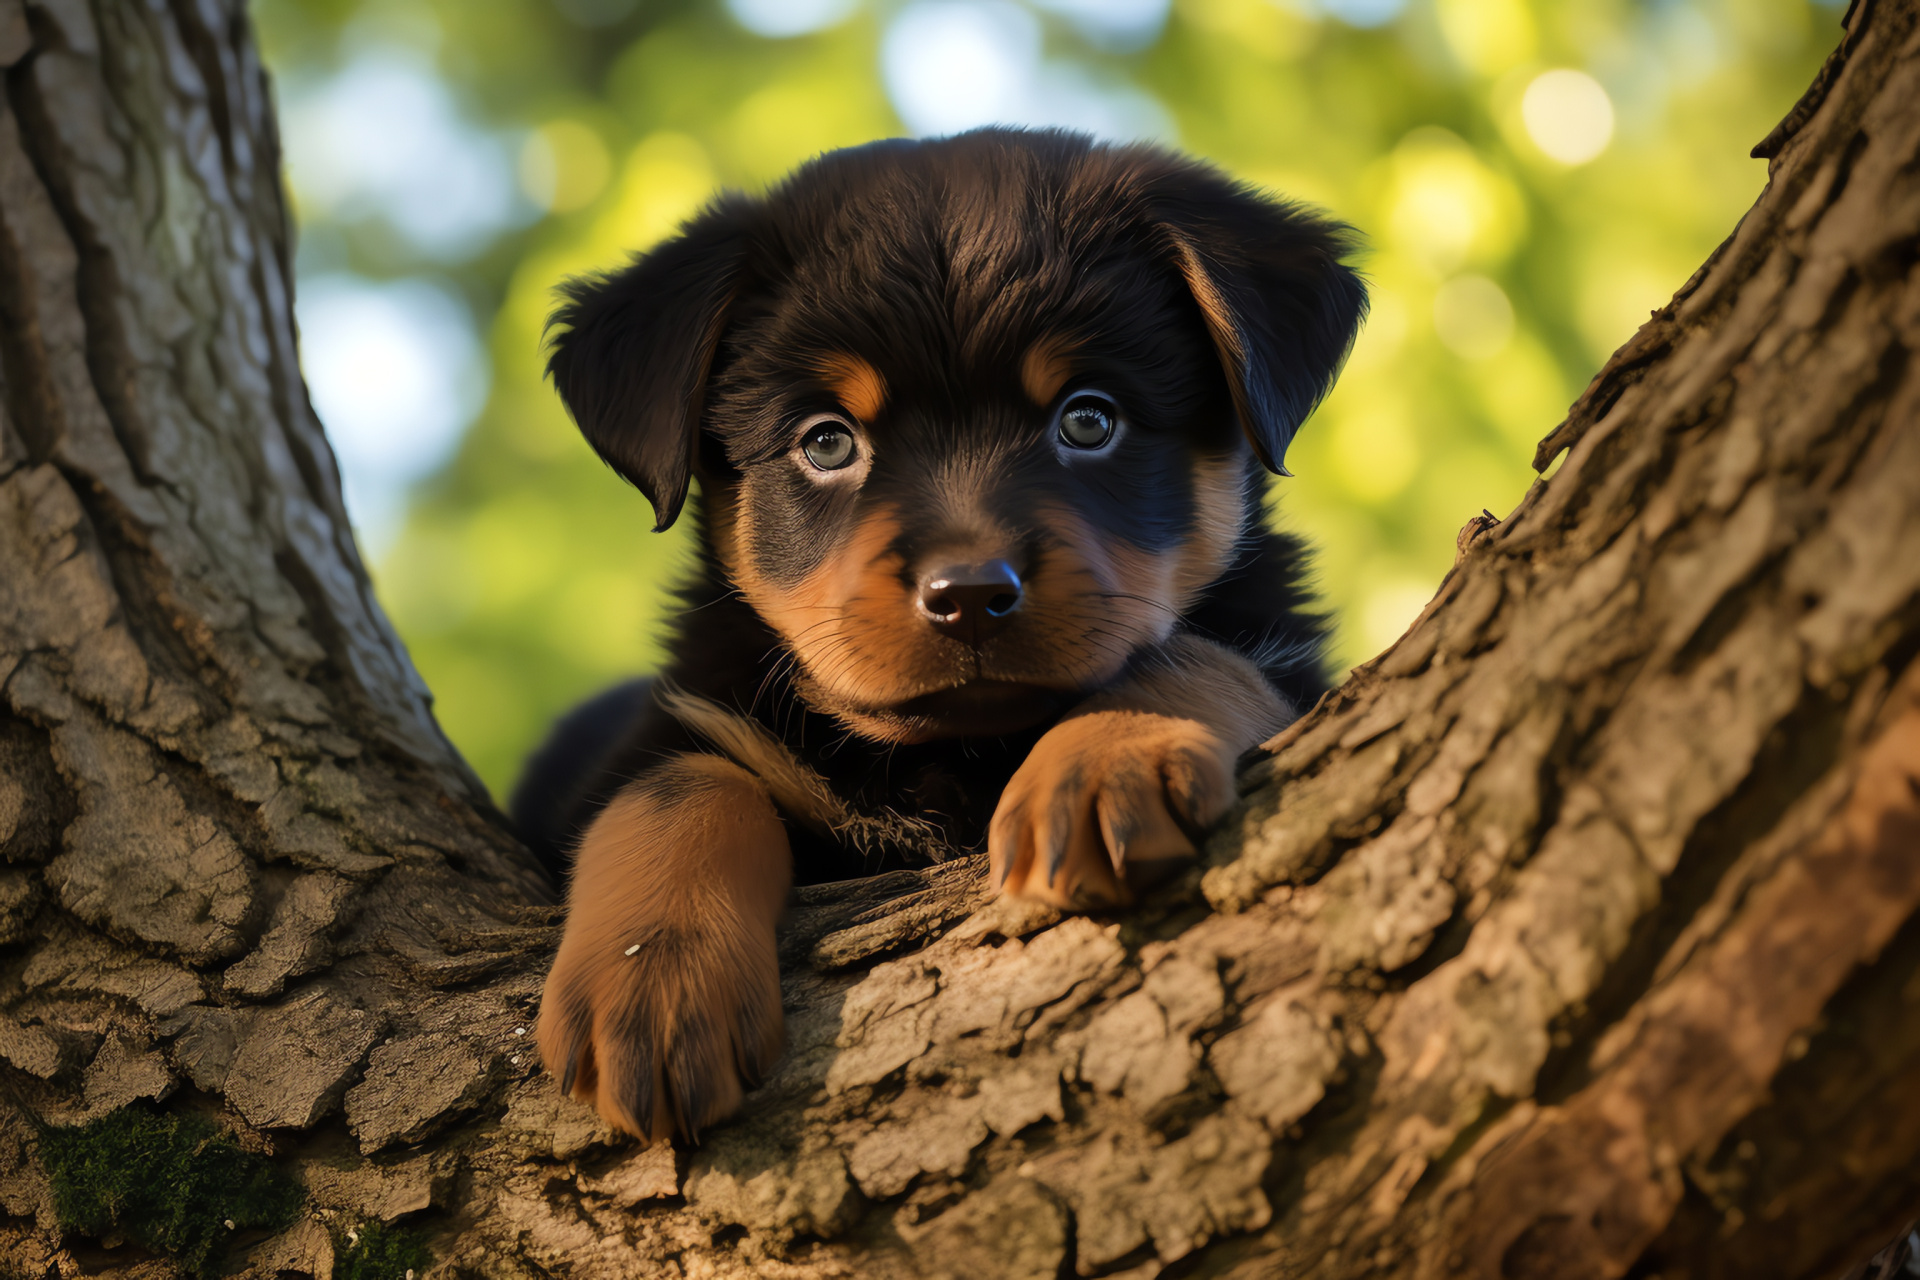 Fluffy Rottweiler puppy, Canine temperament, Black fur, Playful demeanor, Beloved pet, HD Desktop Image